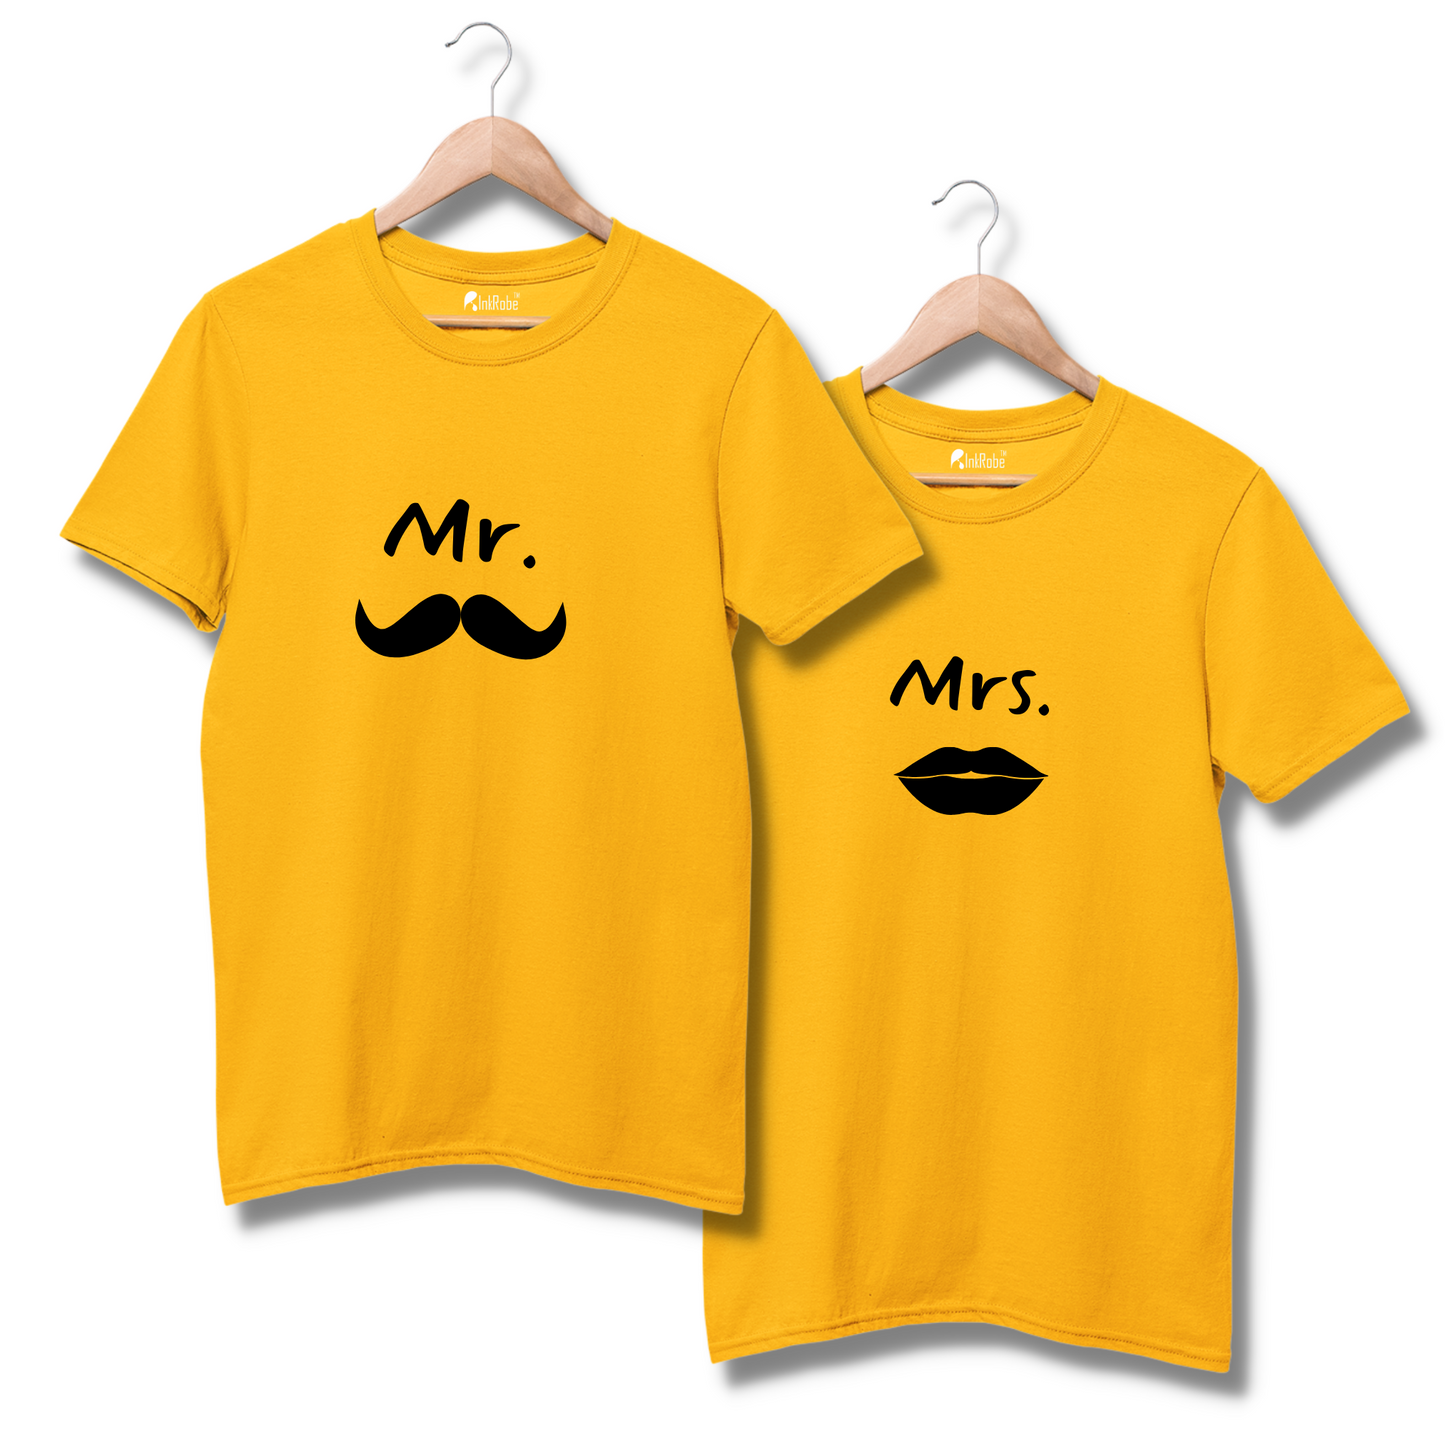 Mr & Mrs Couple Tshirt